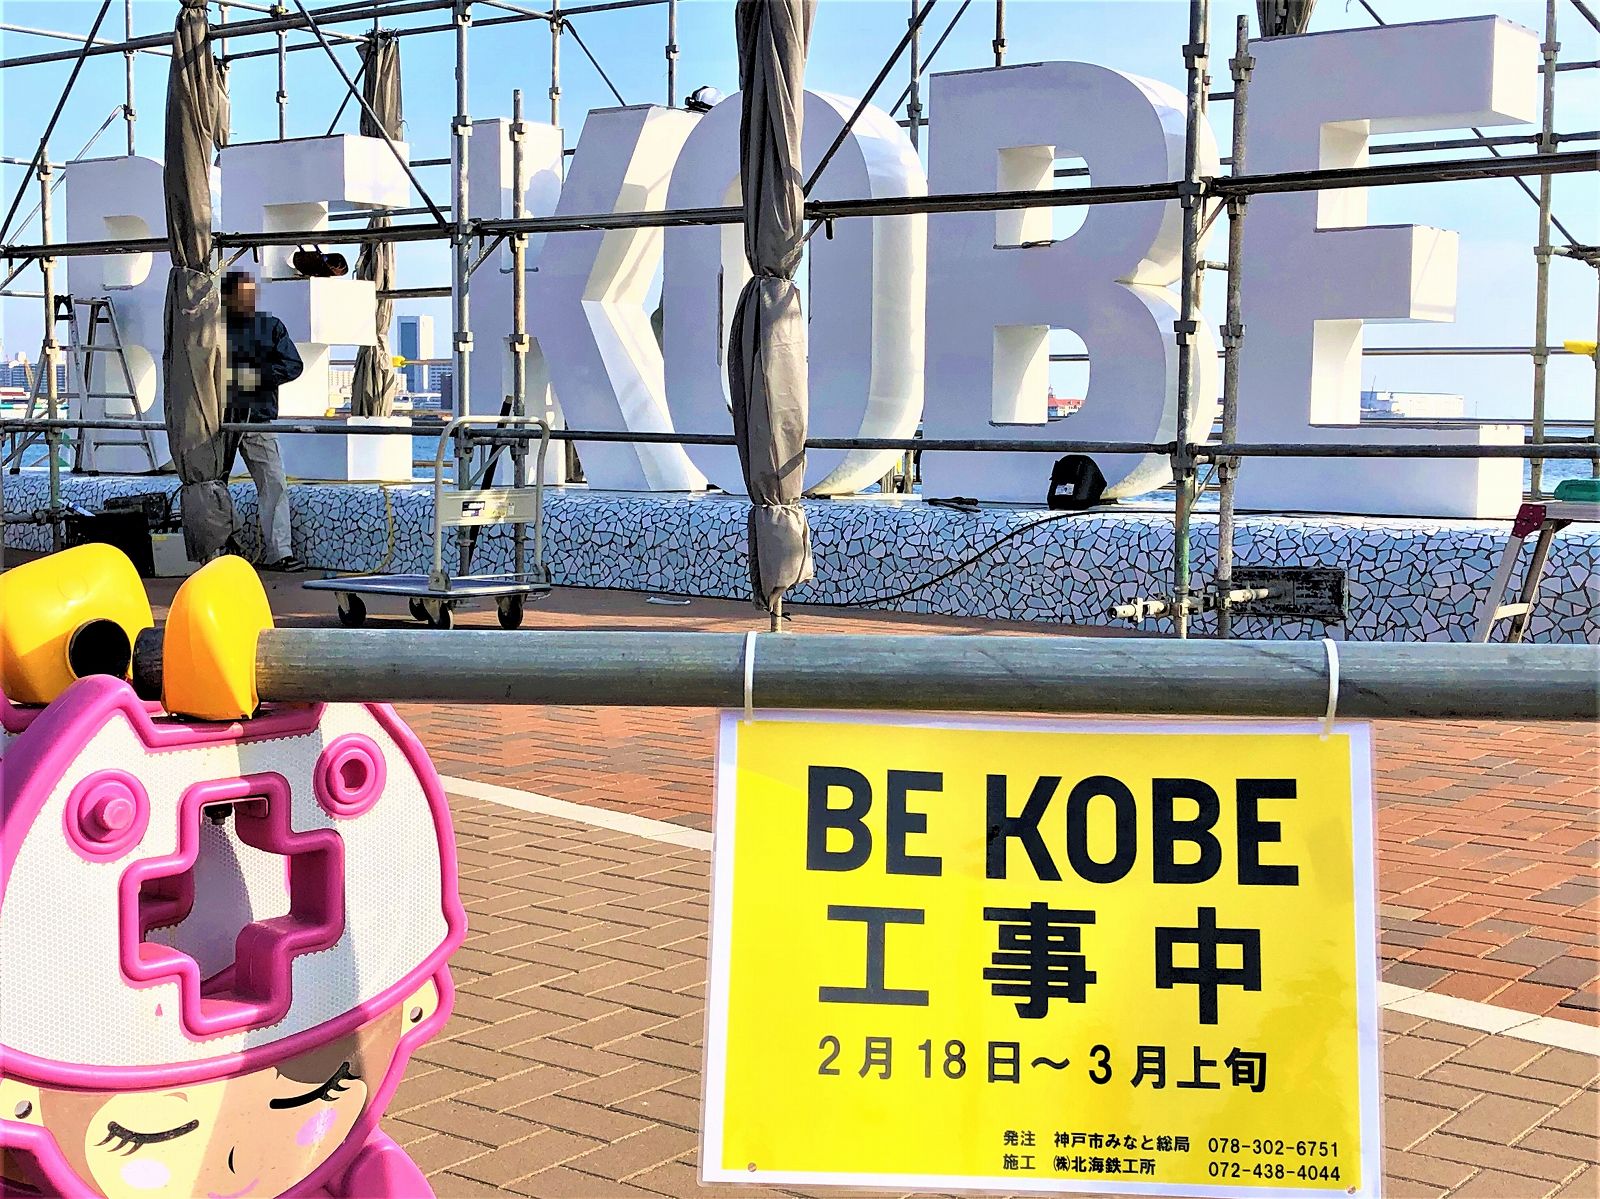 メリケンパークの Be Kobe 補修工事を経て3月5日 火 再び開放へ Bekobe 神戸観光 メリケンパーク インスタ映え 撮影スポット 神戸 東灘ジャーナル